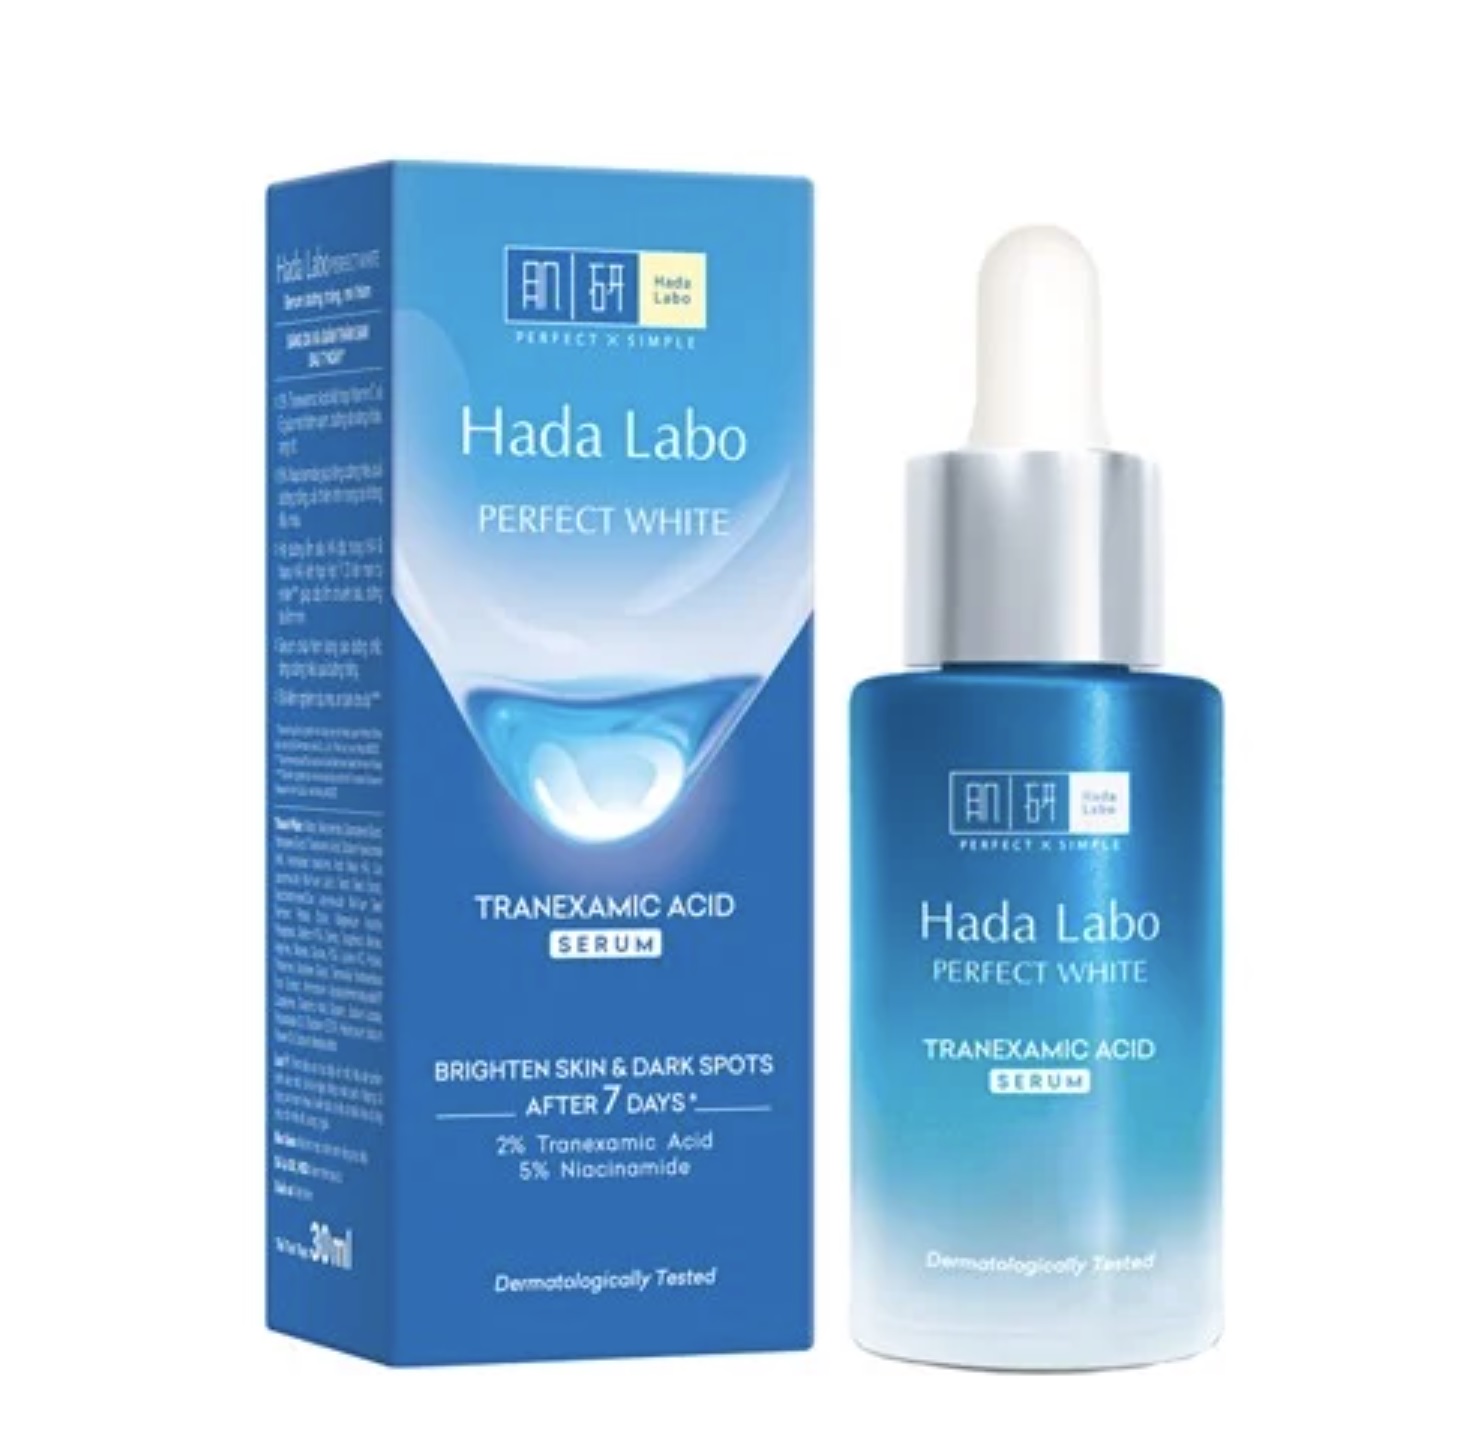 Tinh chất dưỡng trắng Hada Labo PERFECT WHITE 30g (xanh)